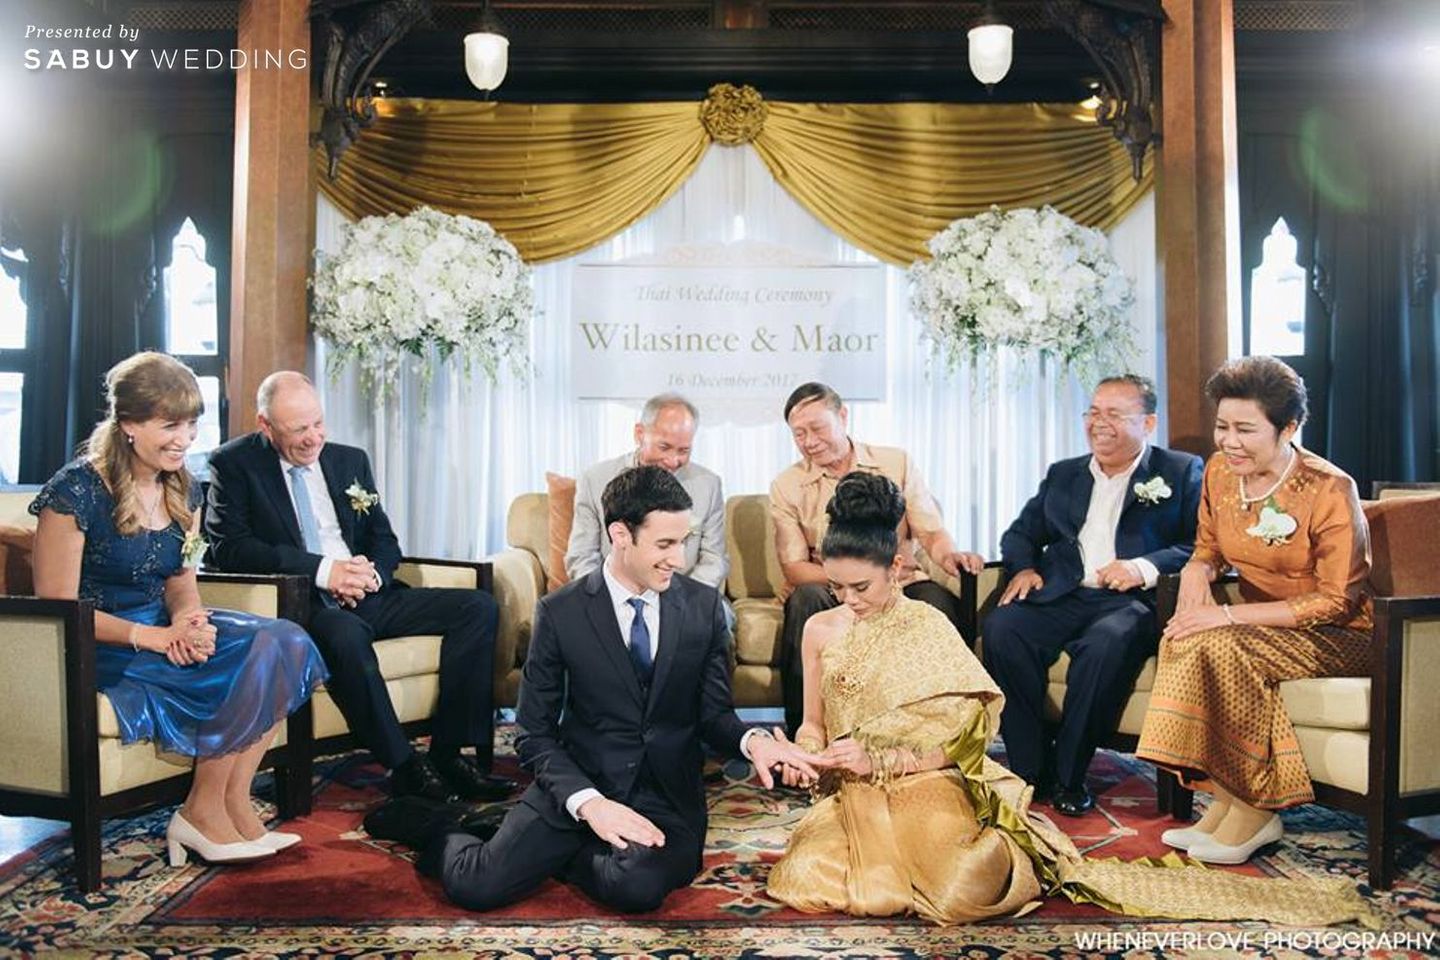 งานหมั้น,พิธีหมั้น,พิธีแต่งงาน,พิธีแต่งงานแบบไทย,เจ้าสาว,เจ้าบ่าว,ญาติผู้ใหญ่,แหวนหมั้น,แหวนแต่งงาน,สถานที่แต่งงาน,สถานที่จัดงานแต่งงาน,Wheneverlove Photography,Shangri-La Hotel,Bangkok งานหมั้นพิธีไทย โดนใจฝรั่ง Photo by Wheneverlove Photography